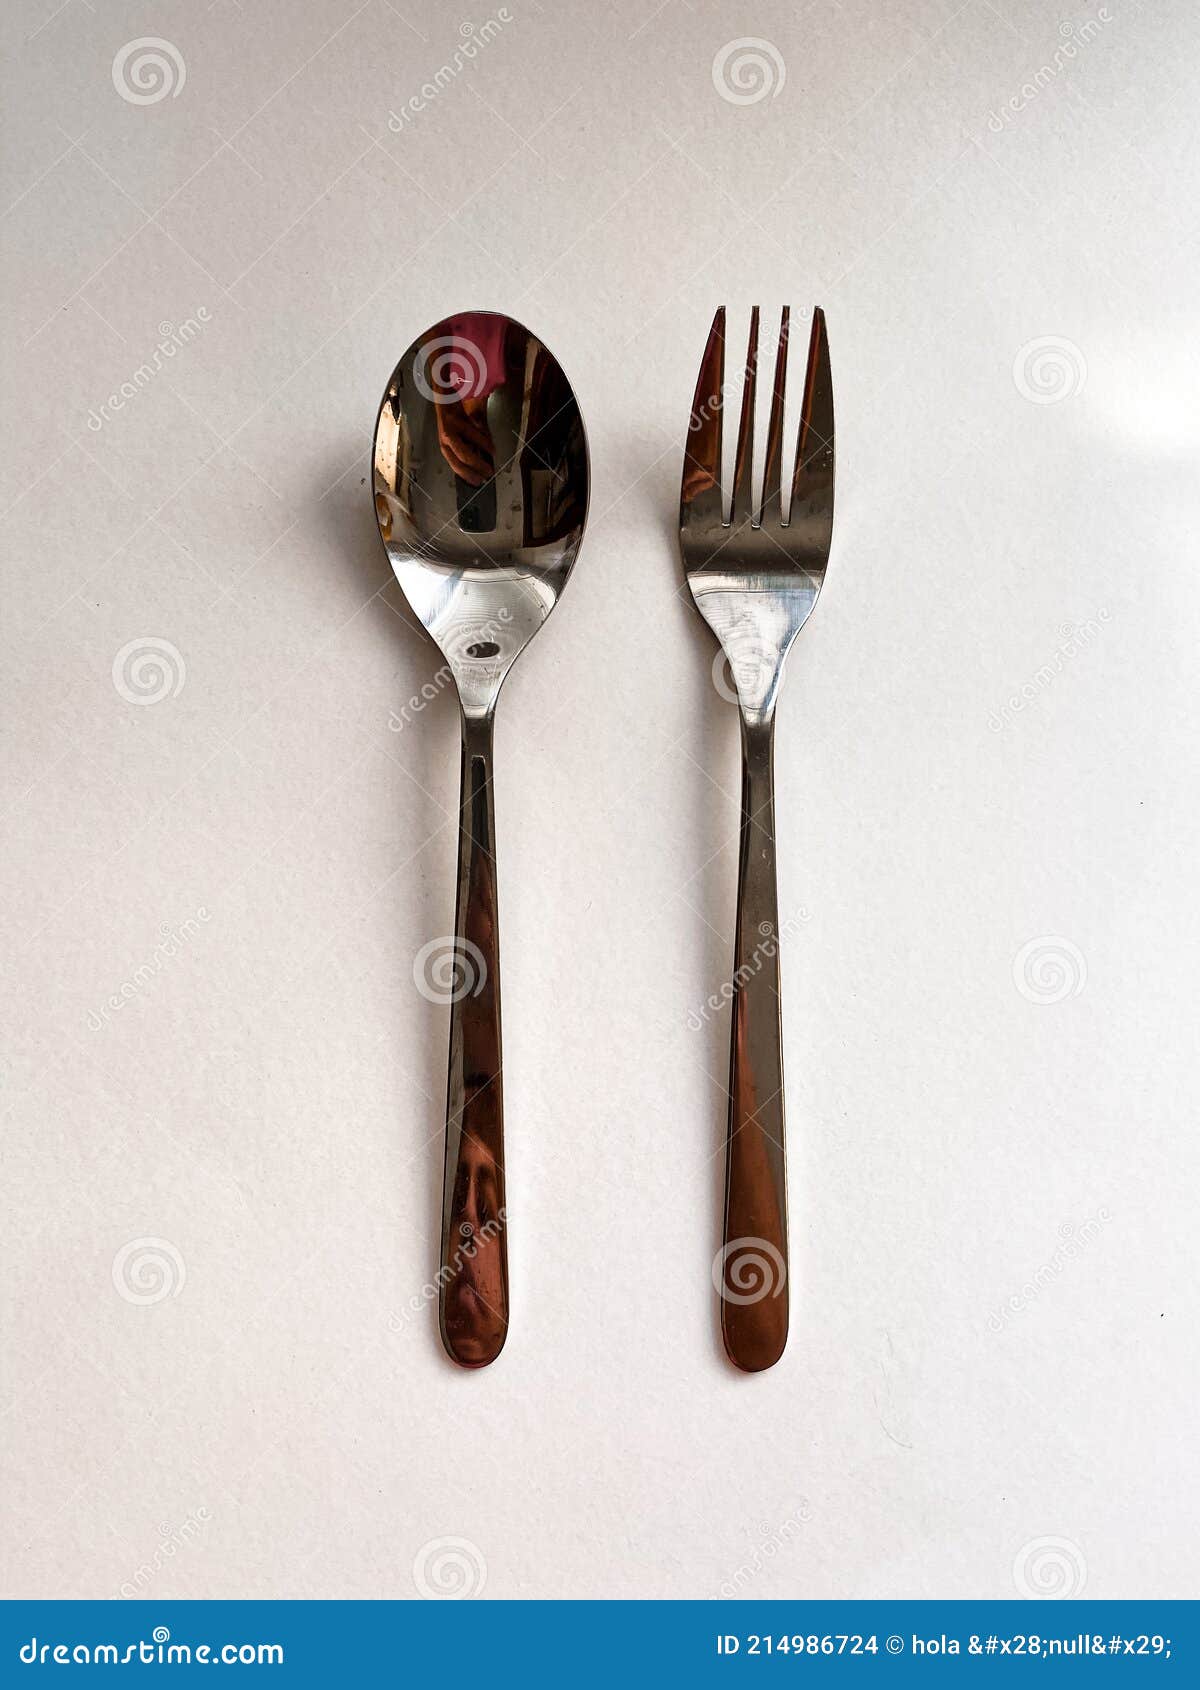 cutlery fork spoon cubiertos tenedor cuchara